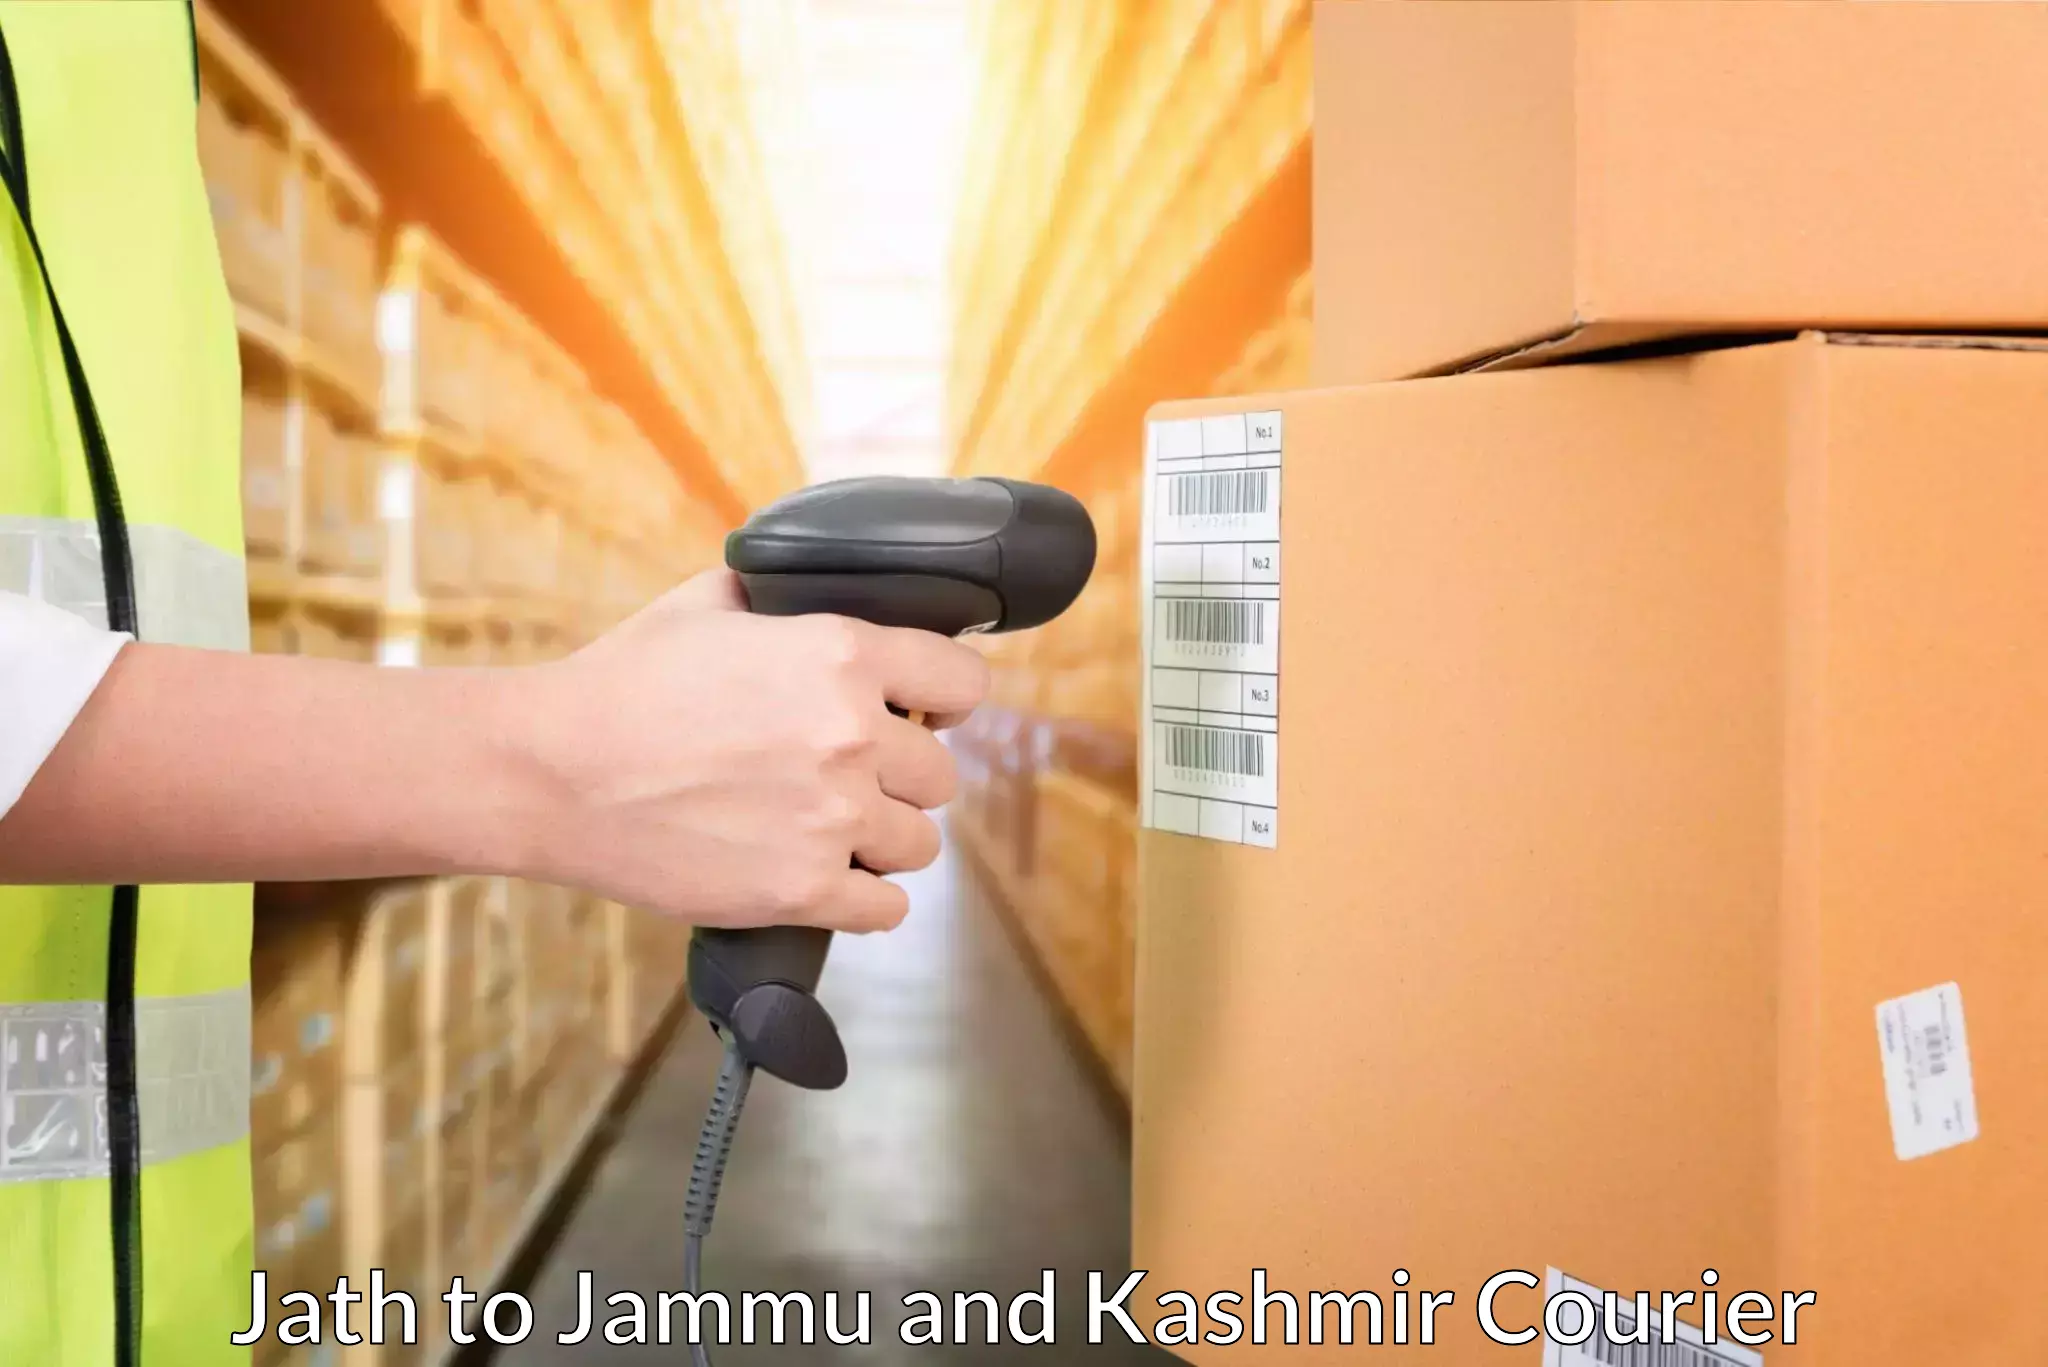 Logistics service provider Jath to Billawar